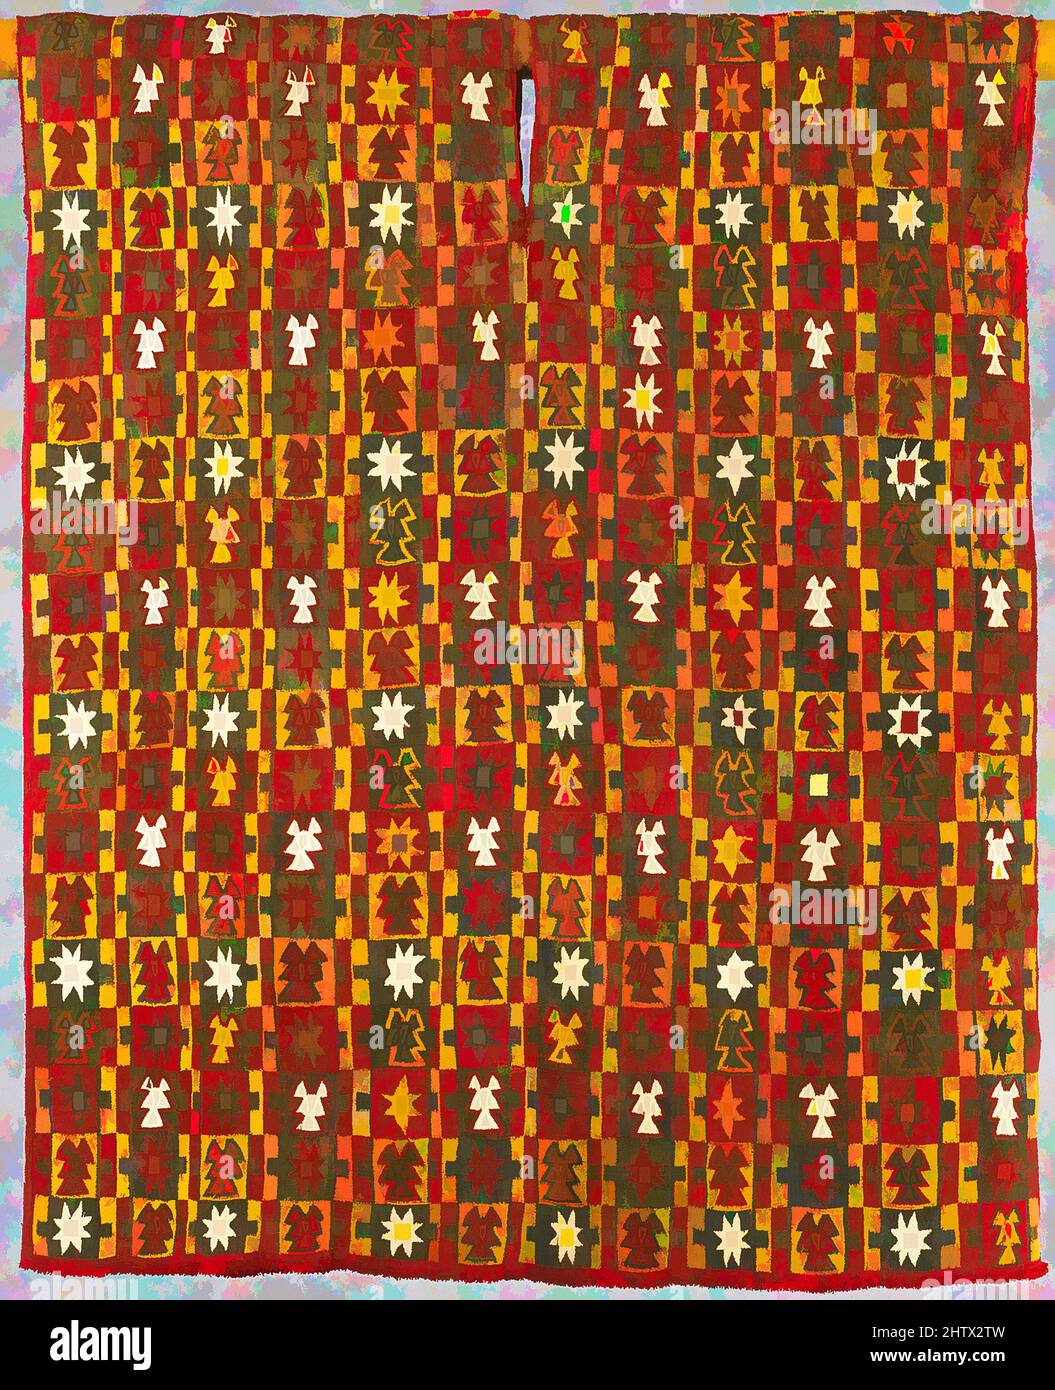 Art inspiré par la tunique à huit pointes Star, 1460–1540, Pérou, Inca, cheveux camélidés, Coton, total : 29 3/4 x 37 po. (75,57 x 93,98 cm), textiles-Woven, les tunics d'Inka, appelés unku dans la langue quechua des Andes, sont généralement plus longs qu'ils ne sont larges. Ils ont été faits d'une seule pièce, les œuvres classiques modernisées par Artotop avec une touche de modernité. Formes, couleur et valeur, impact visuel accrocheur sur l'art émotions par la liberté d'œuvres d'art d'une manière contemporaine. Un message intemporel qui cherche une nouvelle direction créative. Artistes qui se tournent vers le support numérique et créent le NFT Artotop Banque D'Images